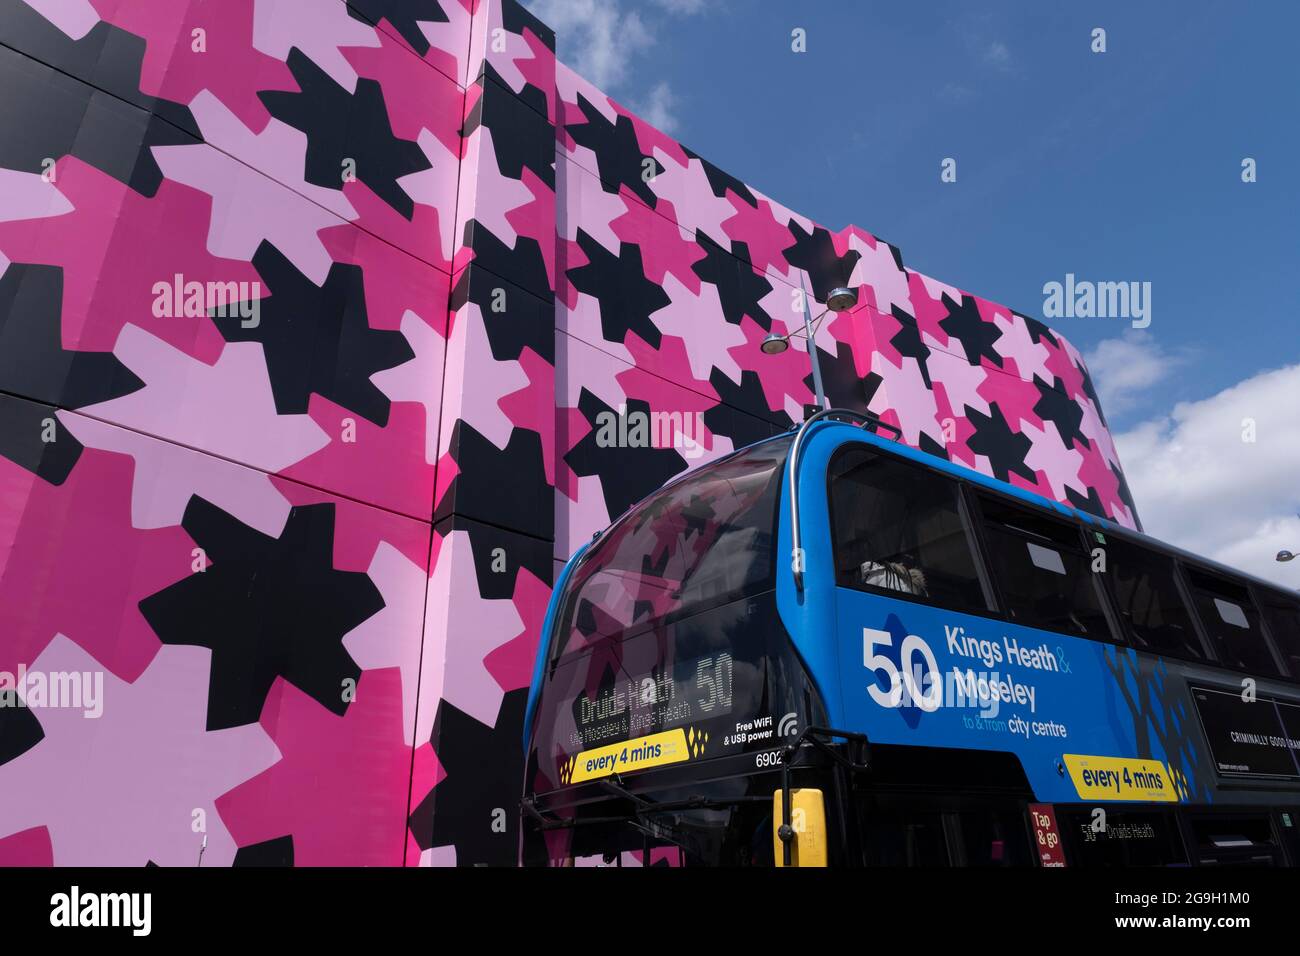 Renovierung des ikonischen Selfridges-Gebäudes im Stadtzentrum am 14. Juli 2021 in Birmingham, Großbritannien. Das Äußere des Gebäudes wurde mit Gerüsten und einer pinken Schutzhülle umhüllt, während es renoviert wird, während die Scheiben gereinigt und in seiner ursprünglichen Farbe neu gestrichen werden. Stockfoto